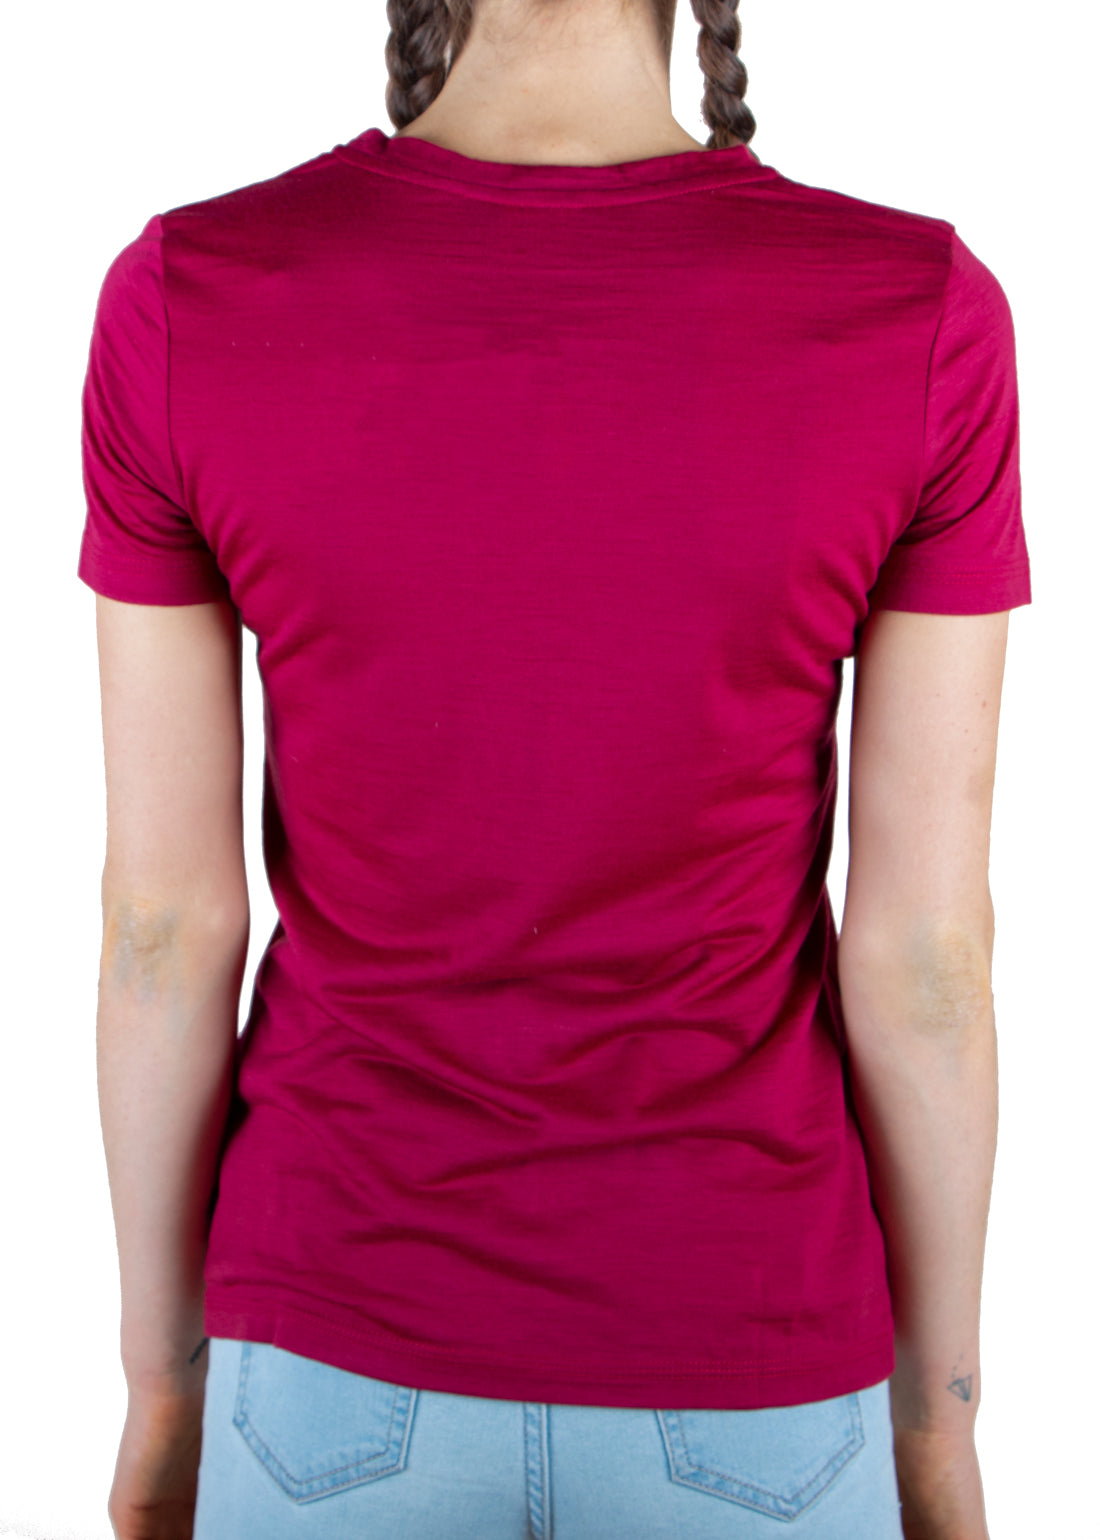 Merino 365 Women's Crew T-Shirt Short Sleeve, Red